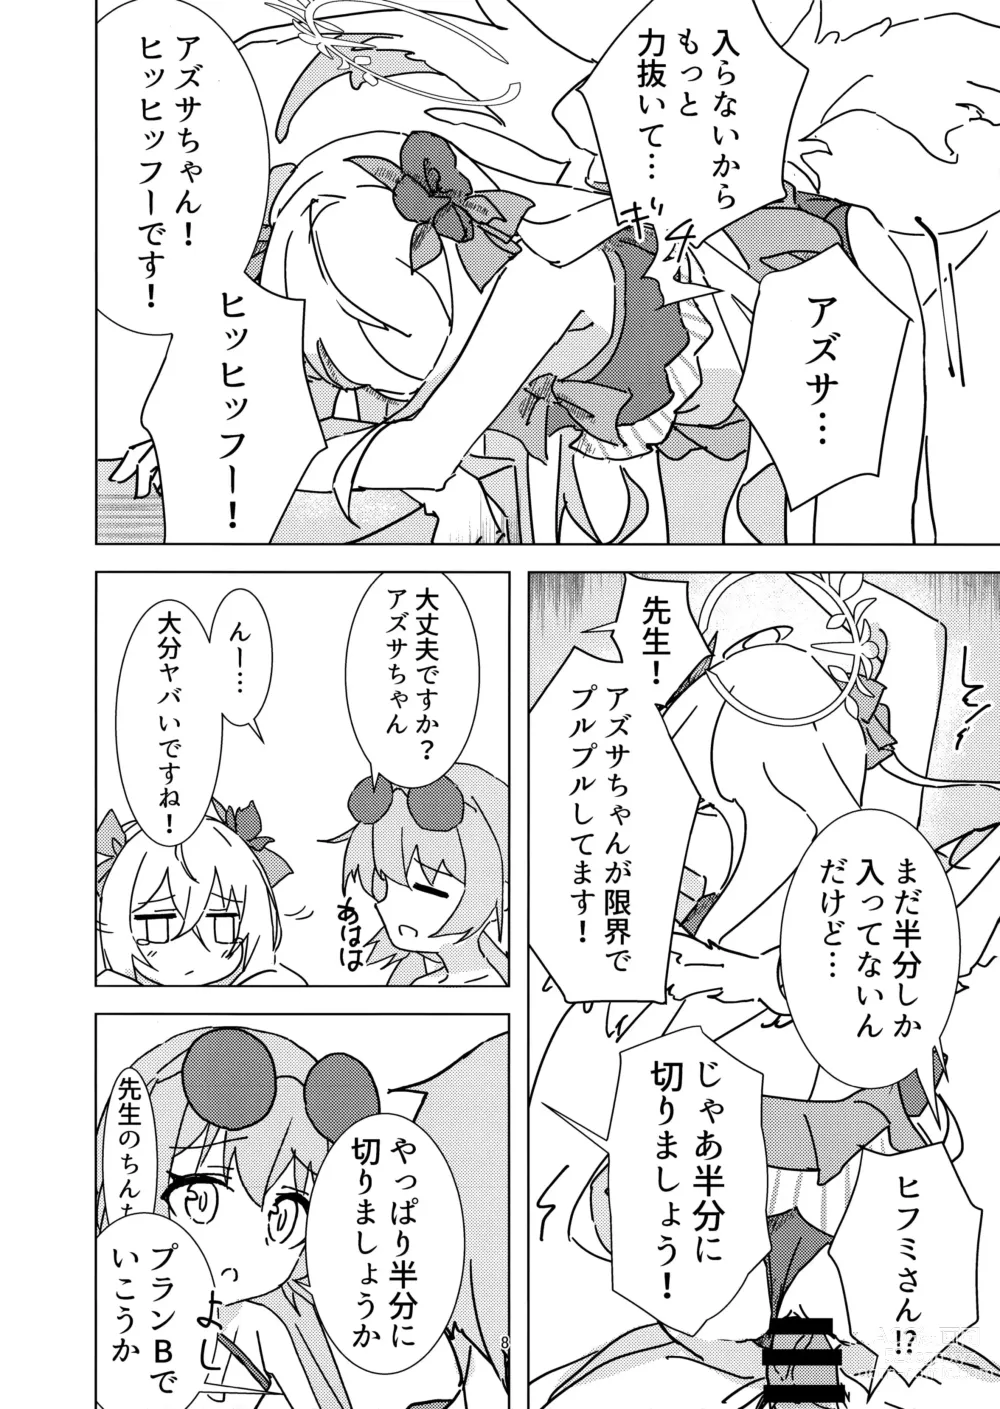 Page 7 of doujinshi Natsuzora Aoku